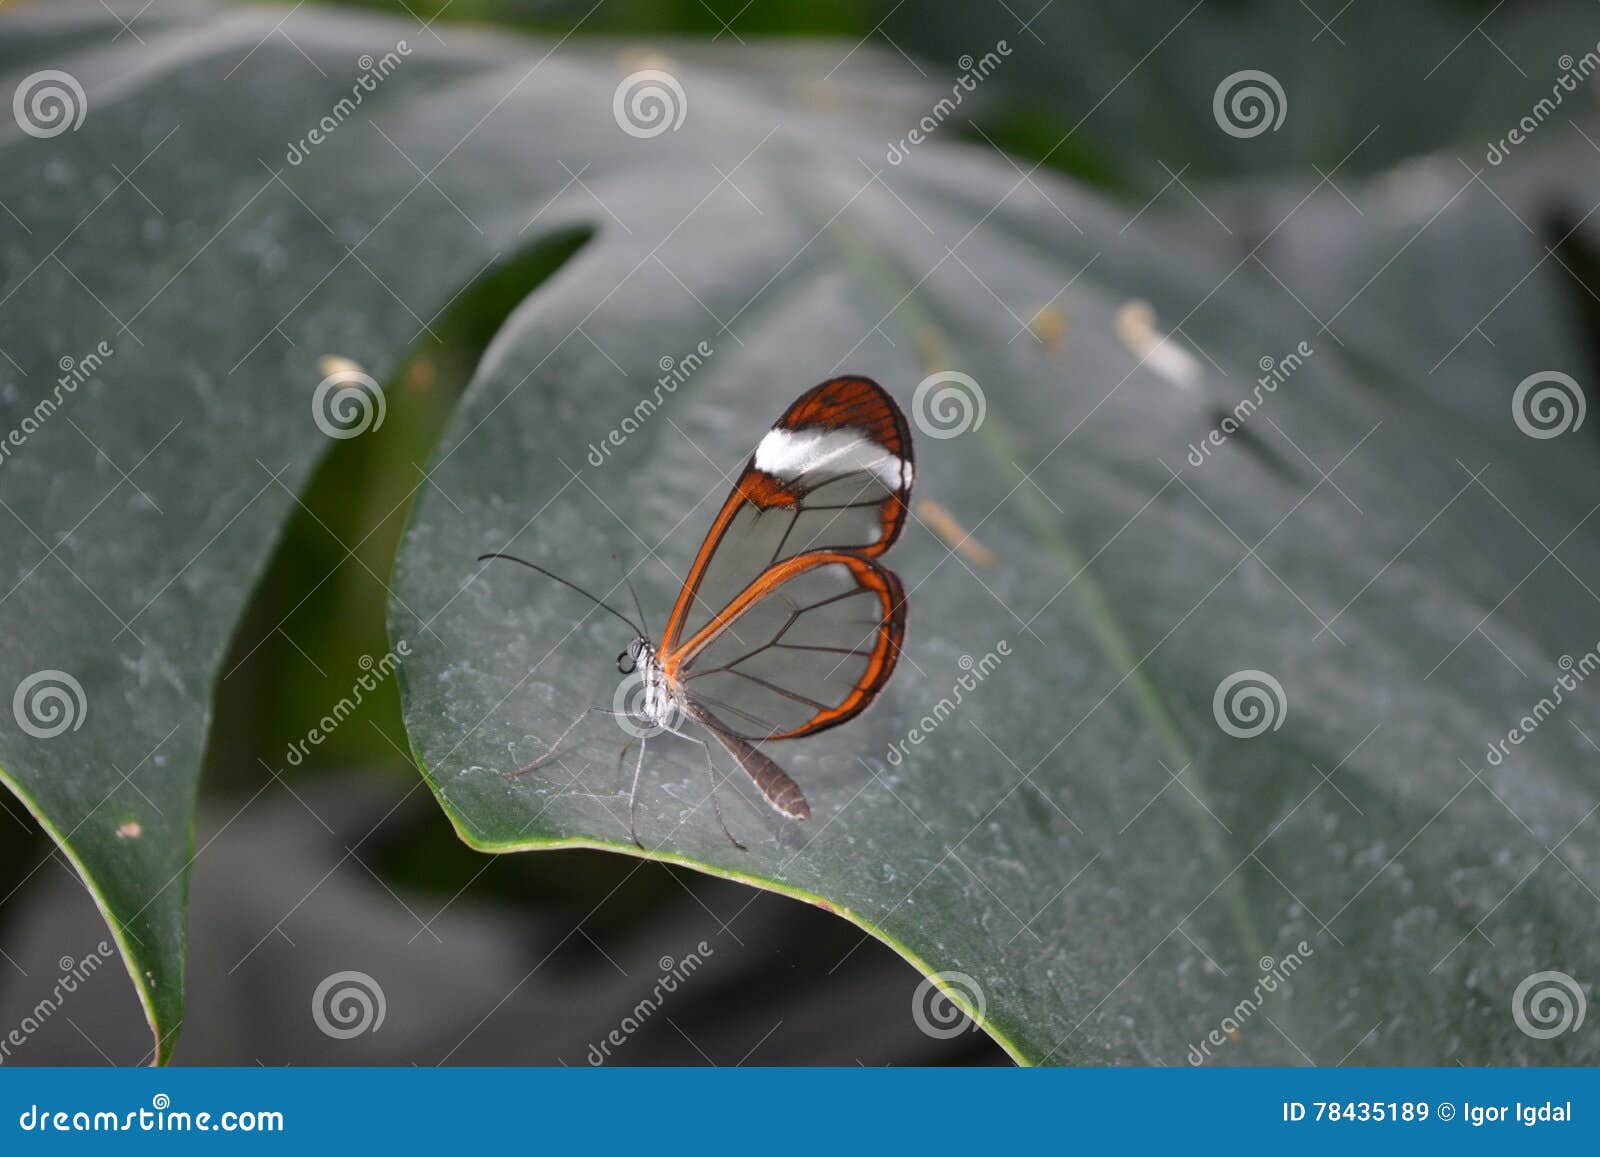 glasswinged butterfly -greta oto- on a green leaf